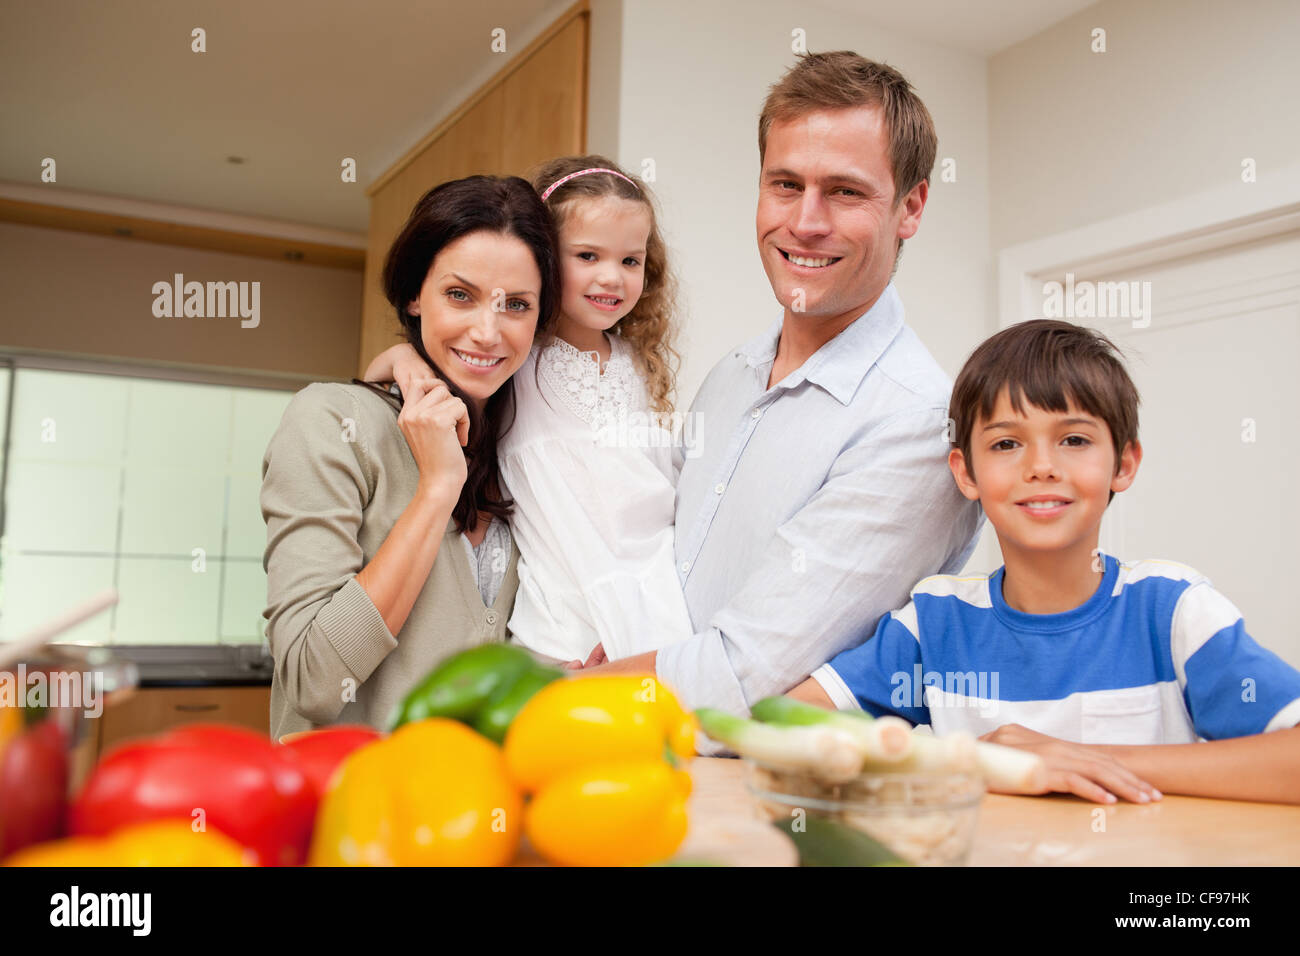 Еду маму друга. Семья стоит возле кухни PNG. Семья стоит и смотрит формочка.